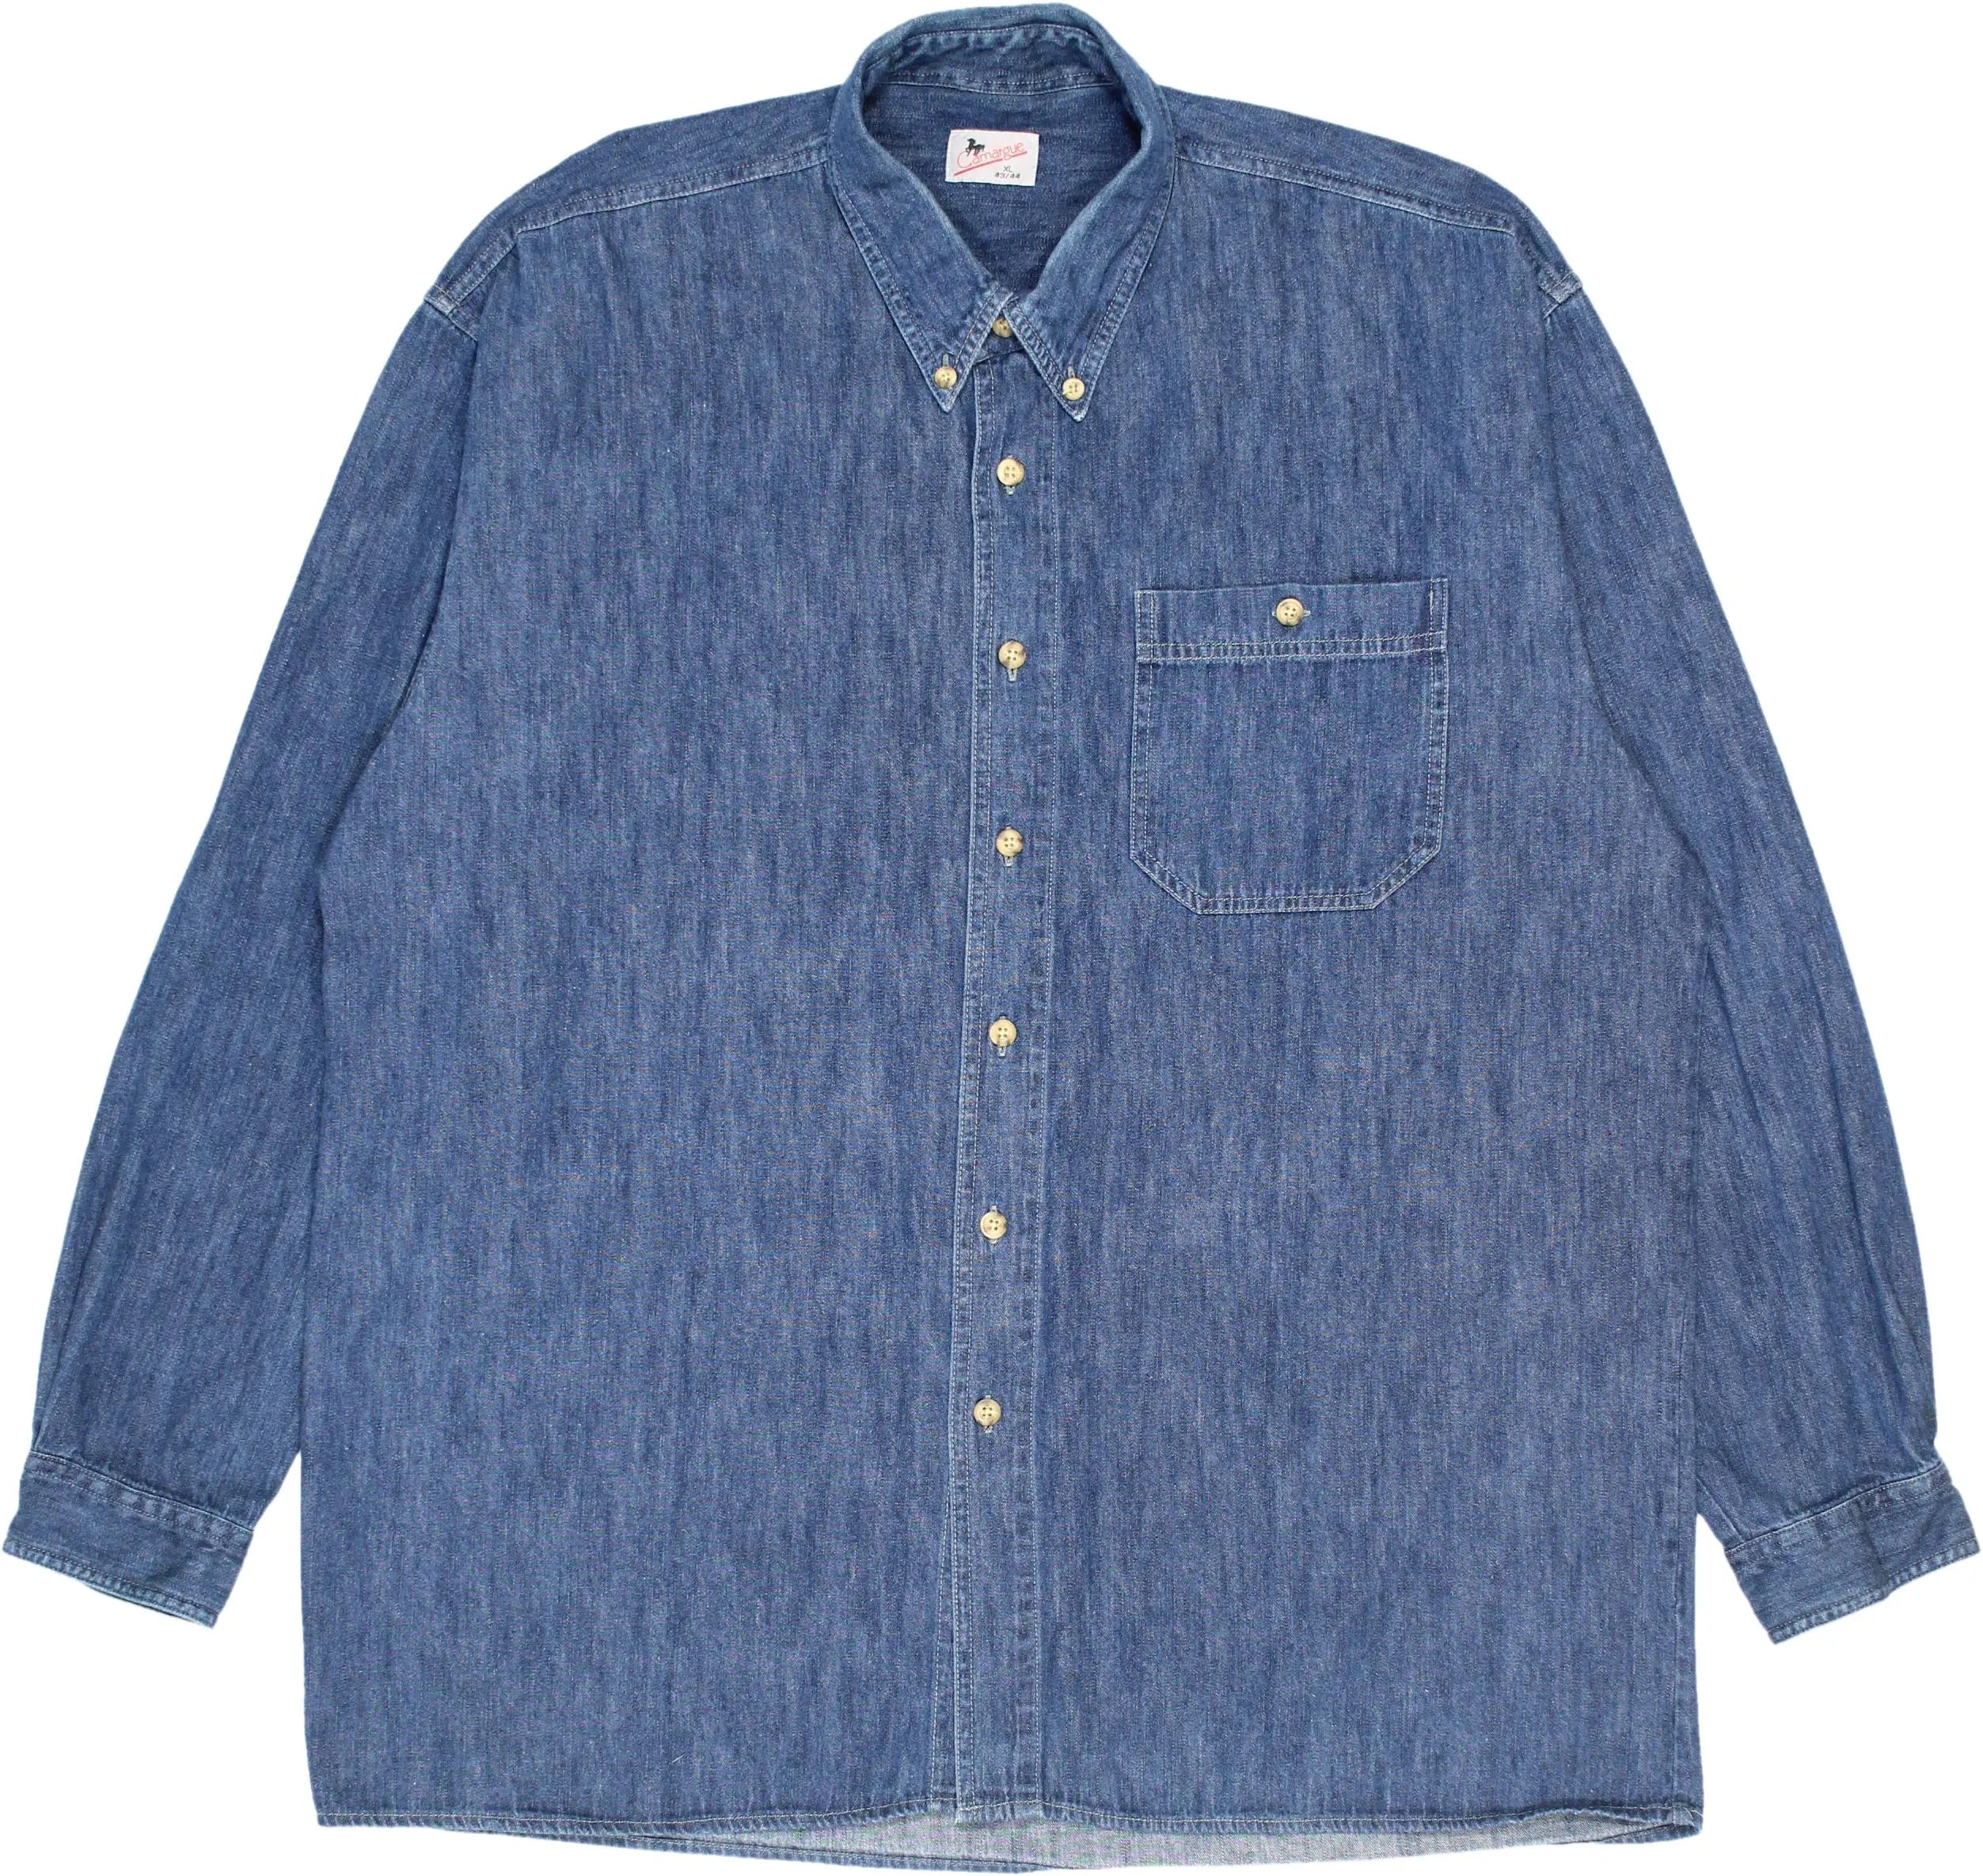 Camargue - Vintage Denim Shirt- ThriftTale.com - Vintage and second handclothing